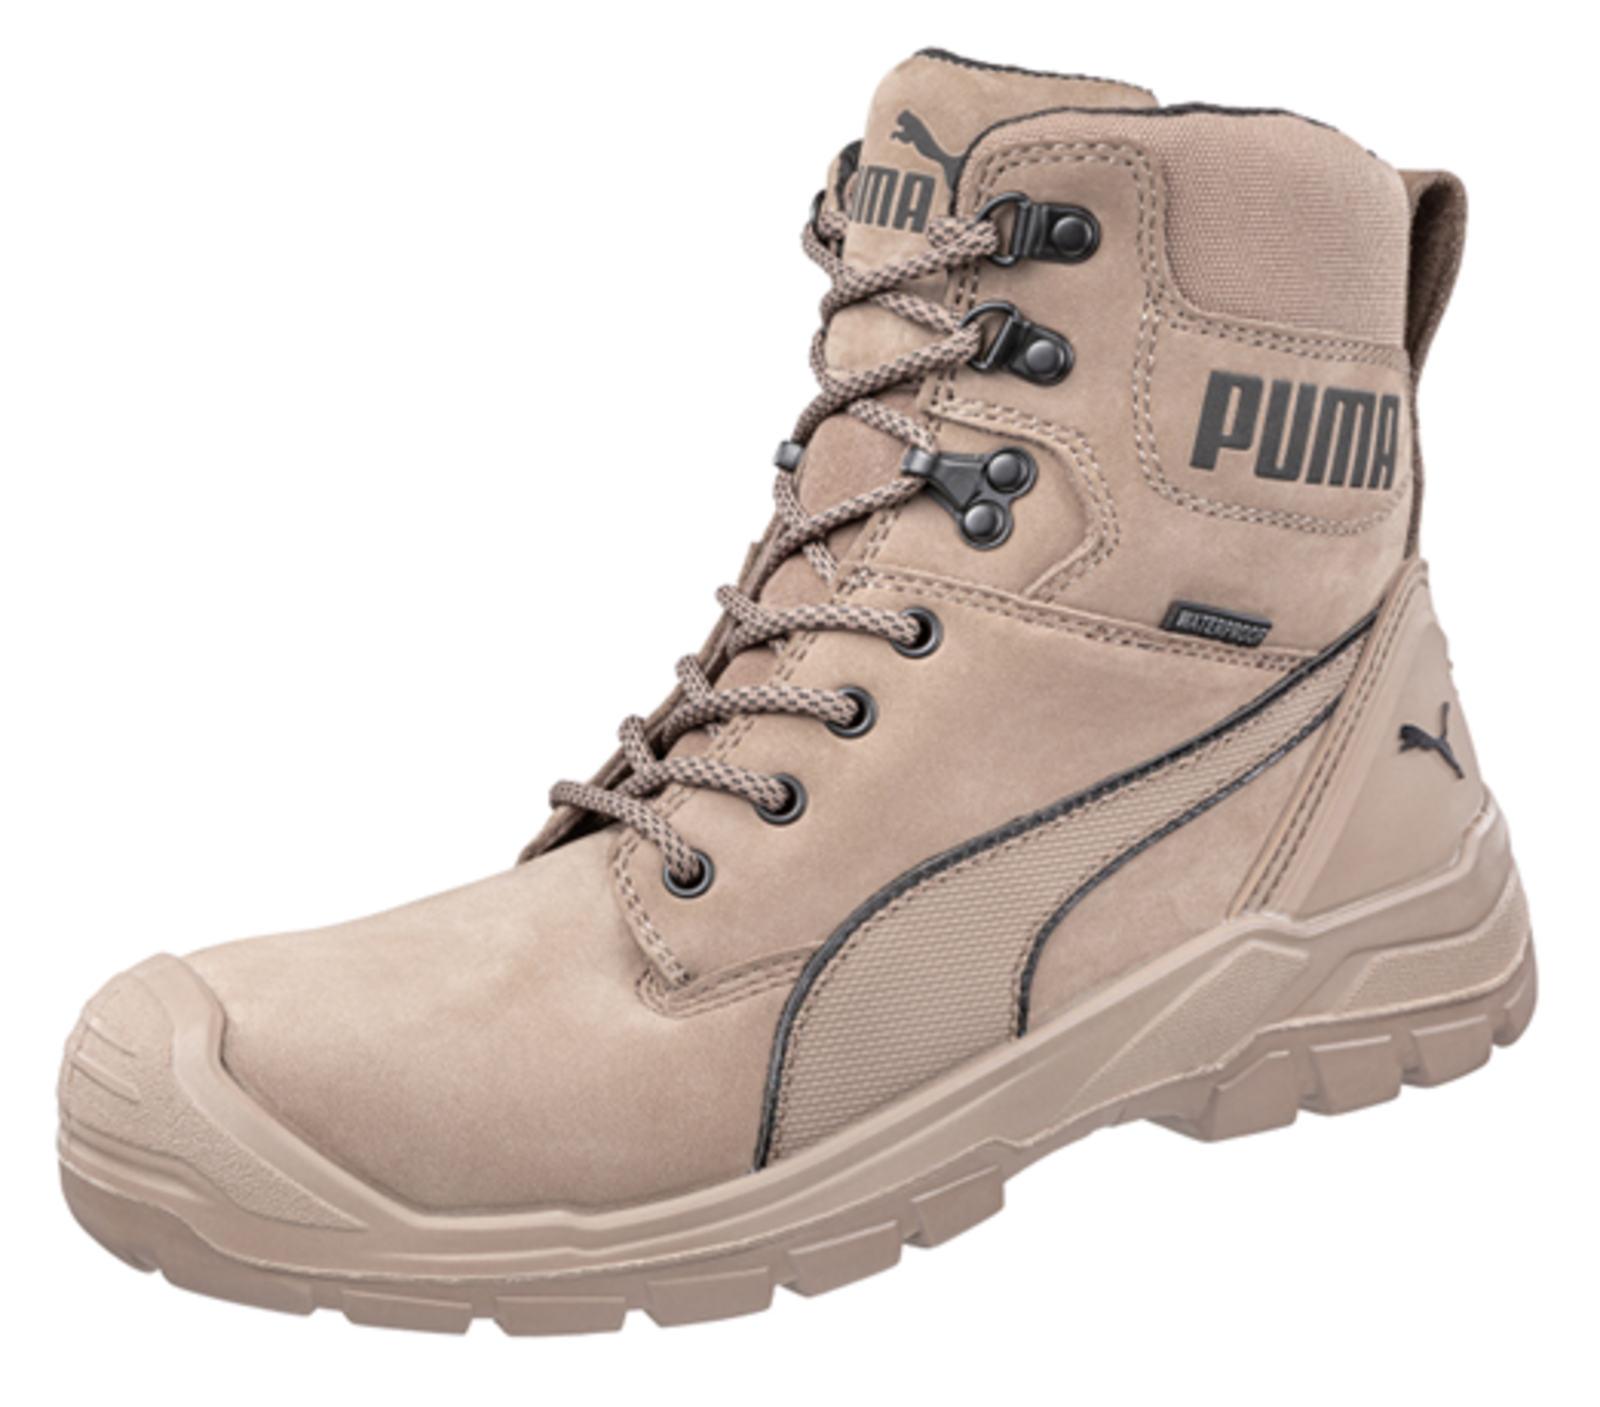 Bezpečnostná obuv Puma Conquest Stone S3 - veľkosť: 41, farba: svetlohnedá